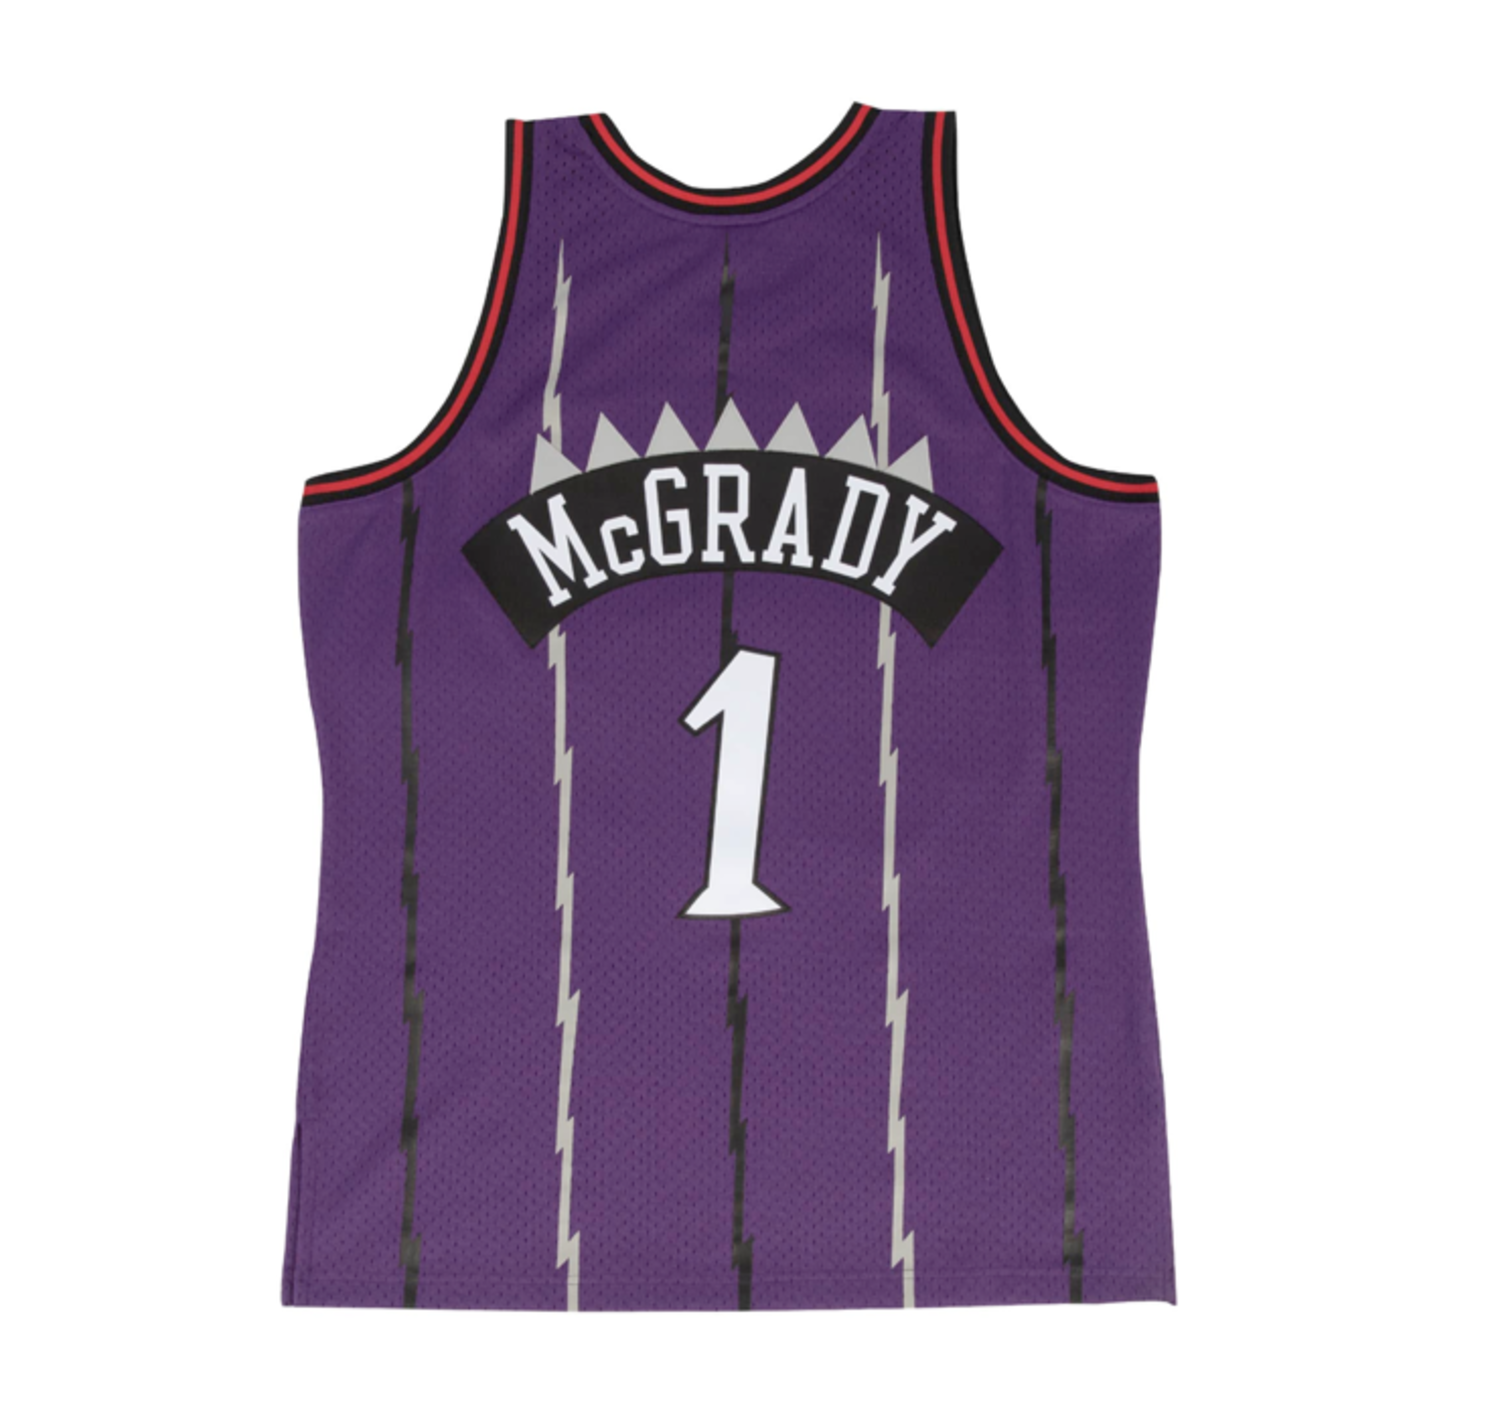 NBA Swingman Toronto Raptors Tracy McGrady Jersey Purple - Burned